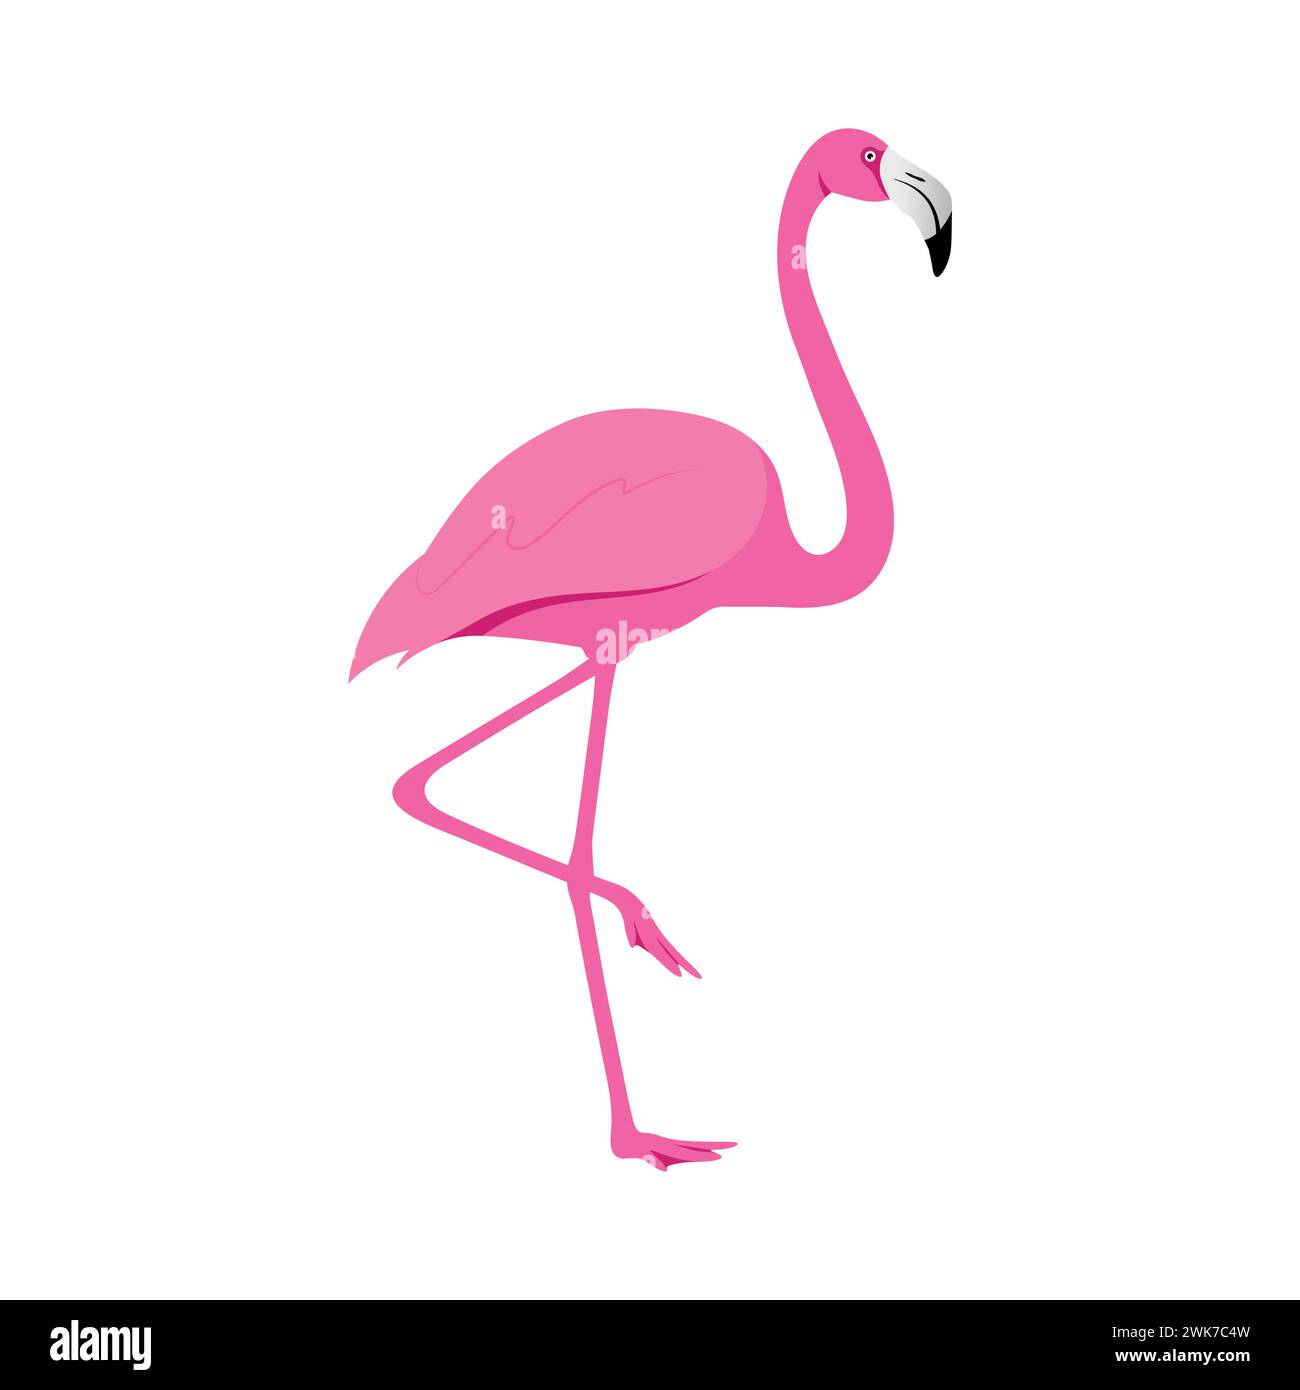 Vecteur d'illustration d'oiseaux de silhouette de flamant rose Illustration de Vecteur